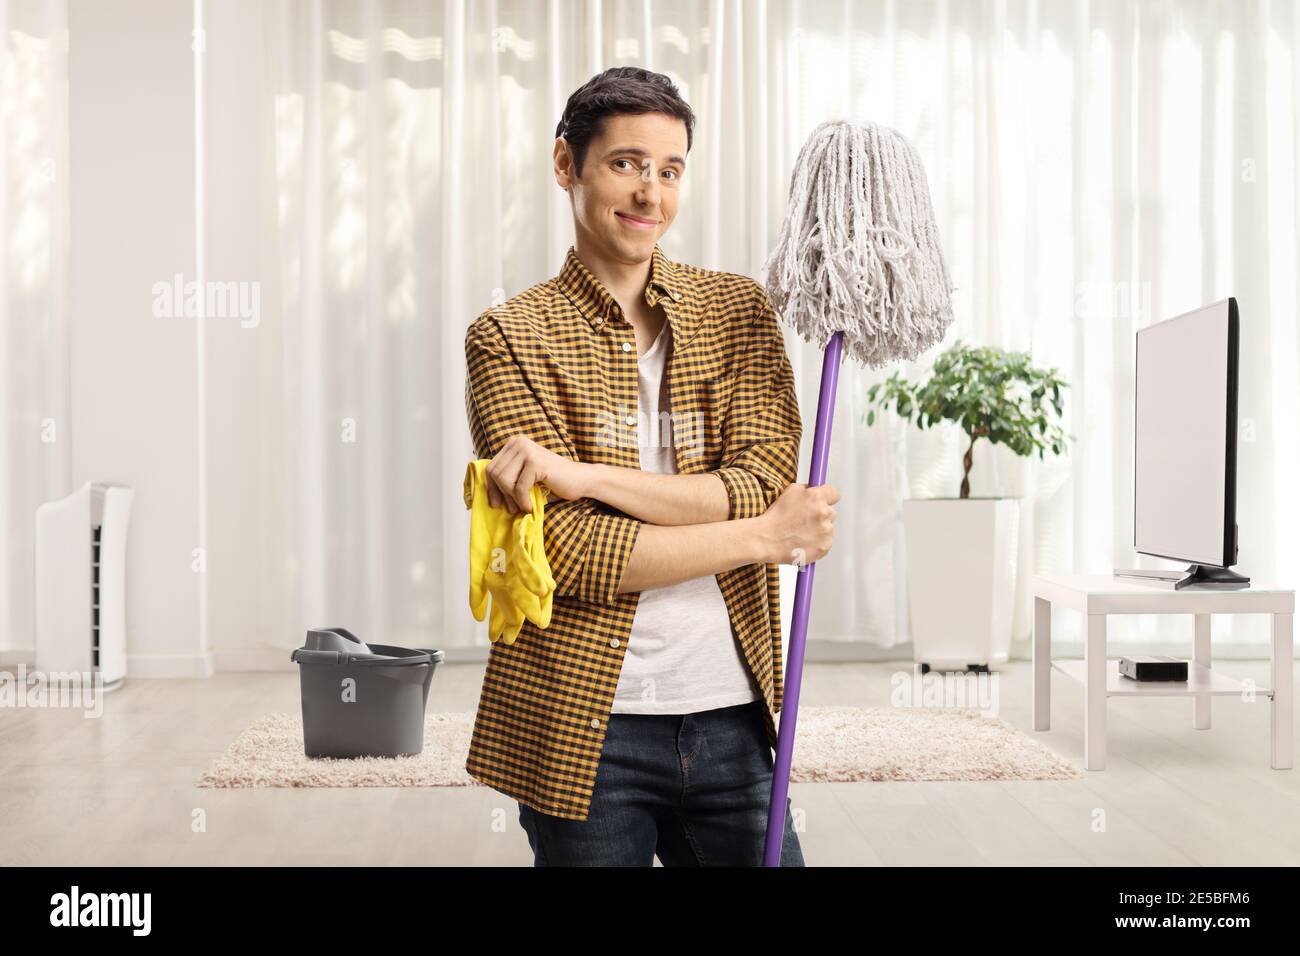 Giovane uomo che tiene un mop di pulizia e un paio di guanti in soggiorno Foto Stock